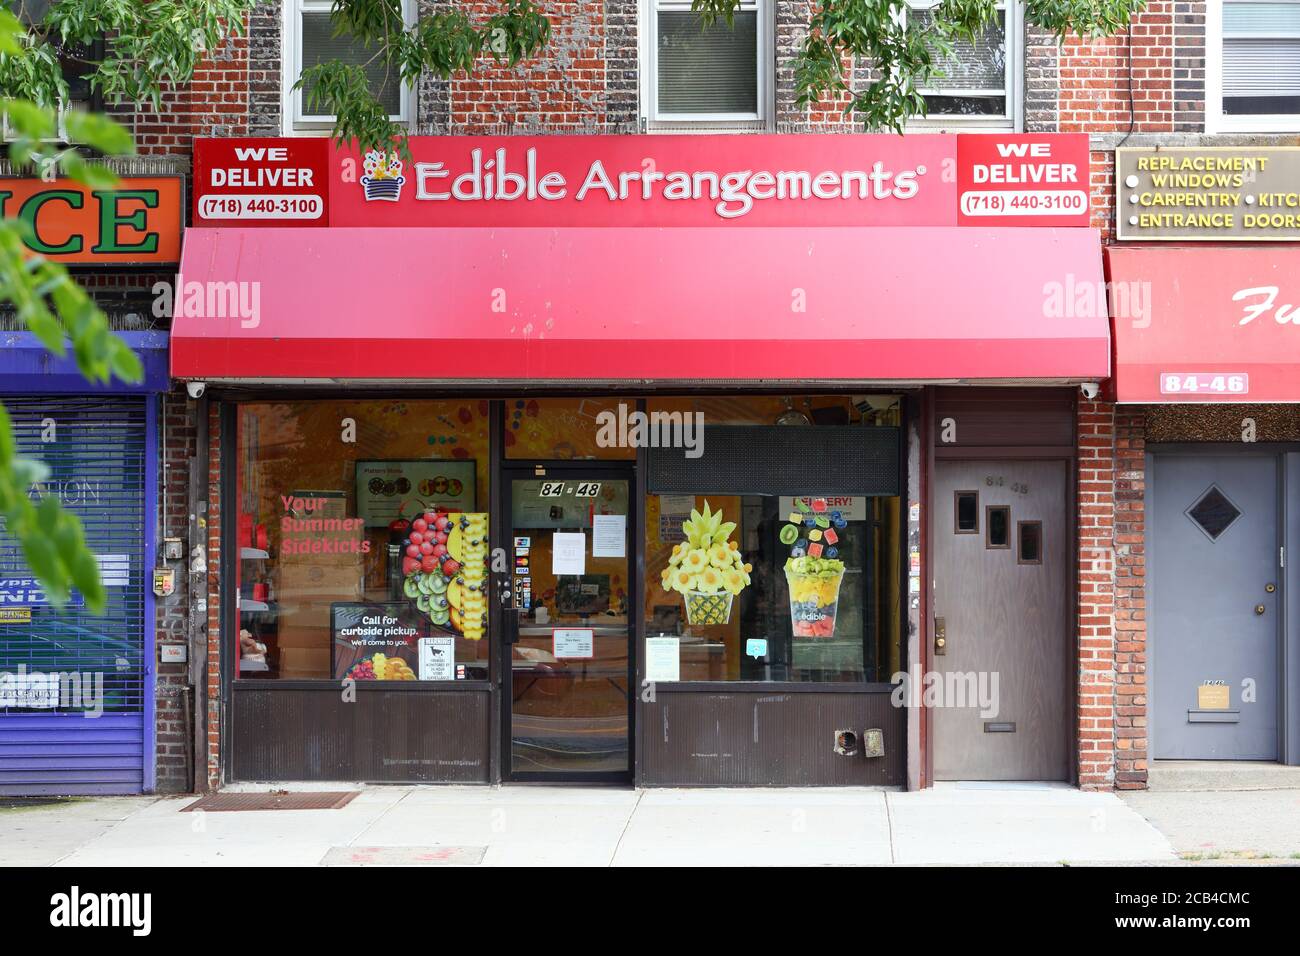 Essbare Arrangements, 84-48 Grand Ave, Queens, New York. NYC-Schaufensterfoto einer Geschenkeladen-Kette im Stadtteil Elmhurst. Stockfoto